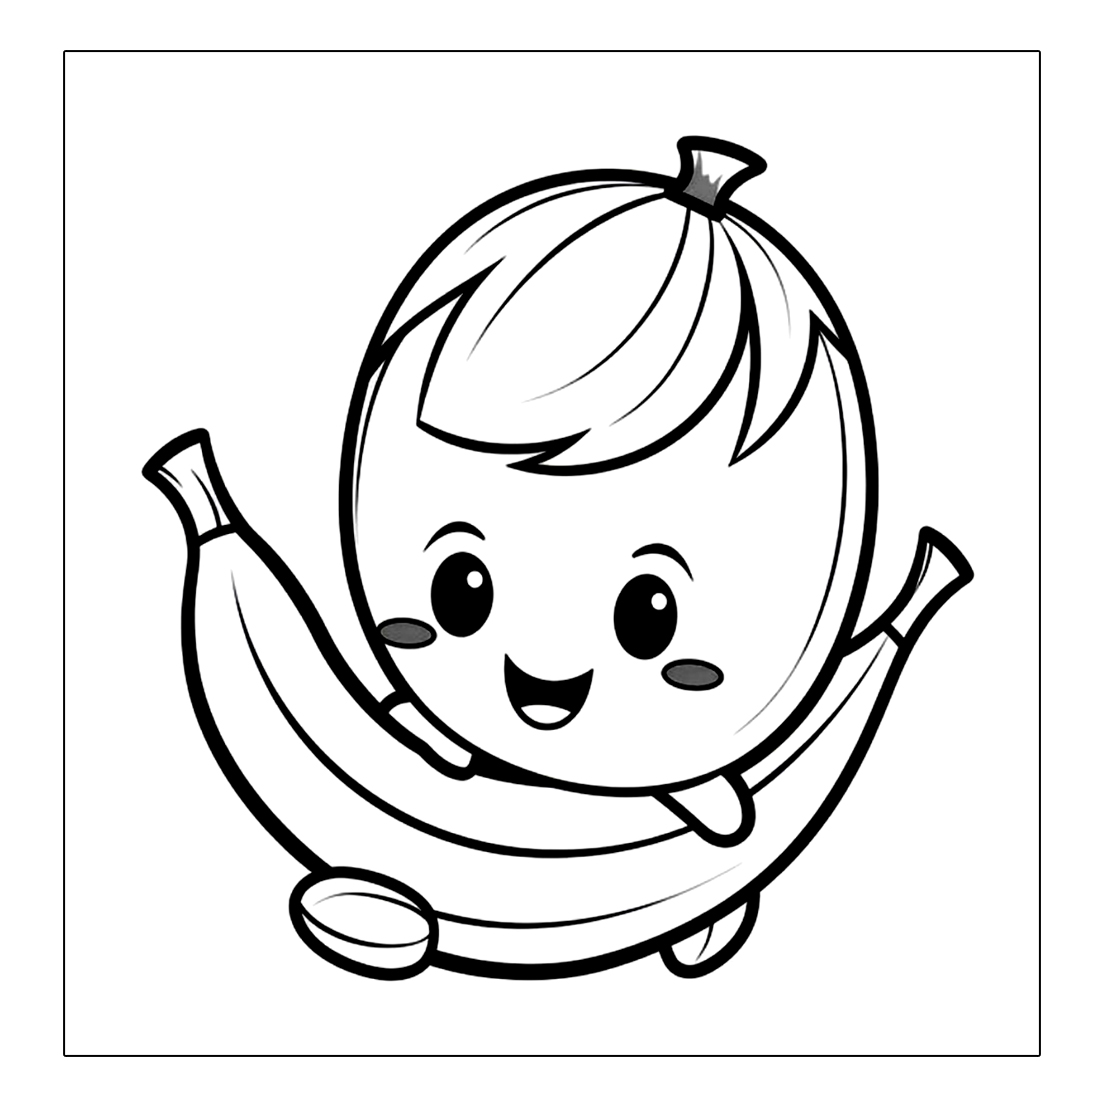 Der kleine Junge isst gerne Banane